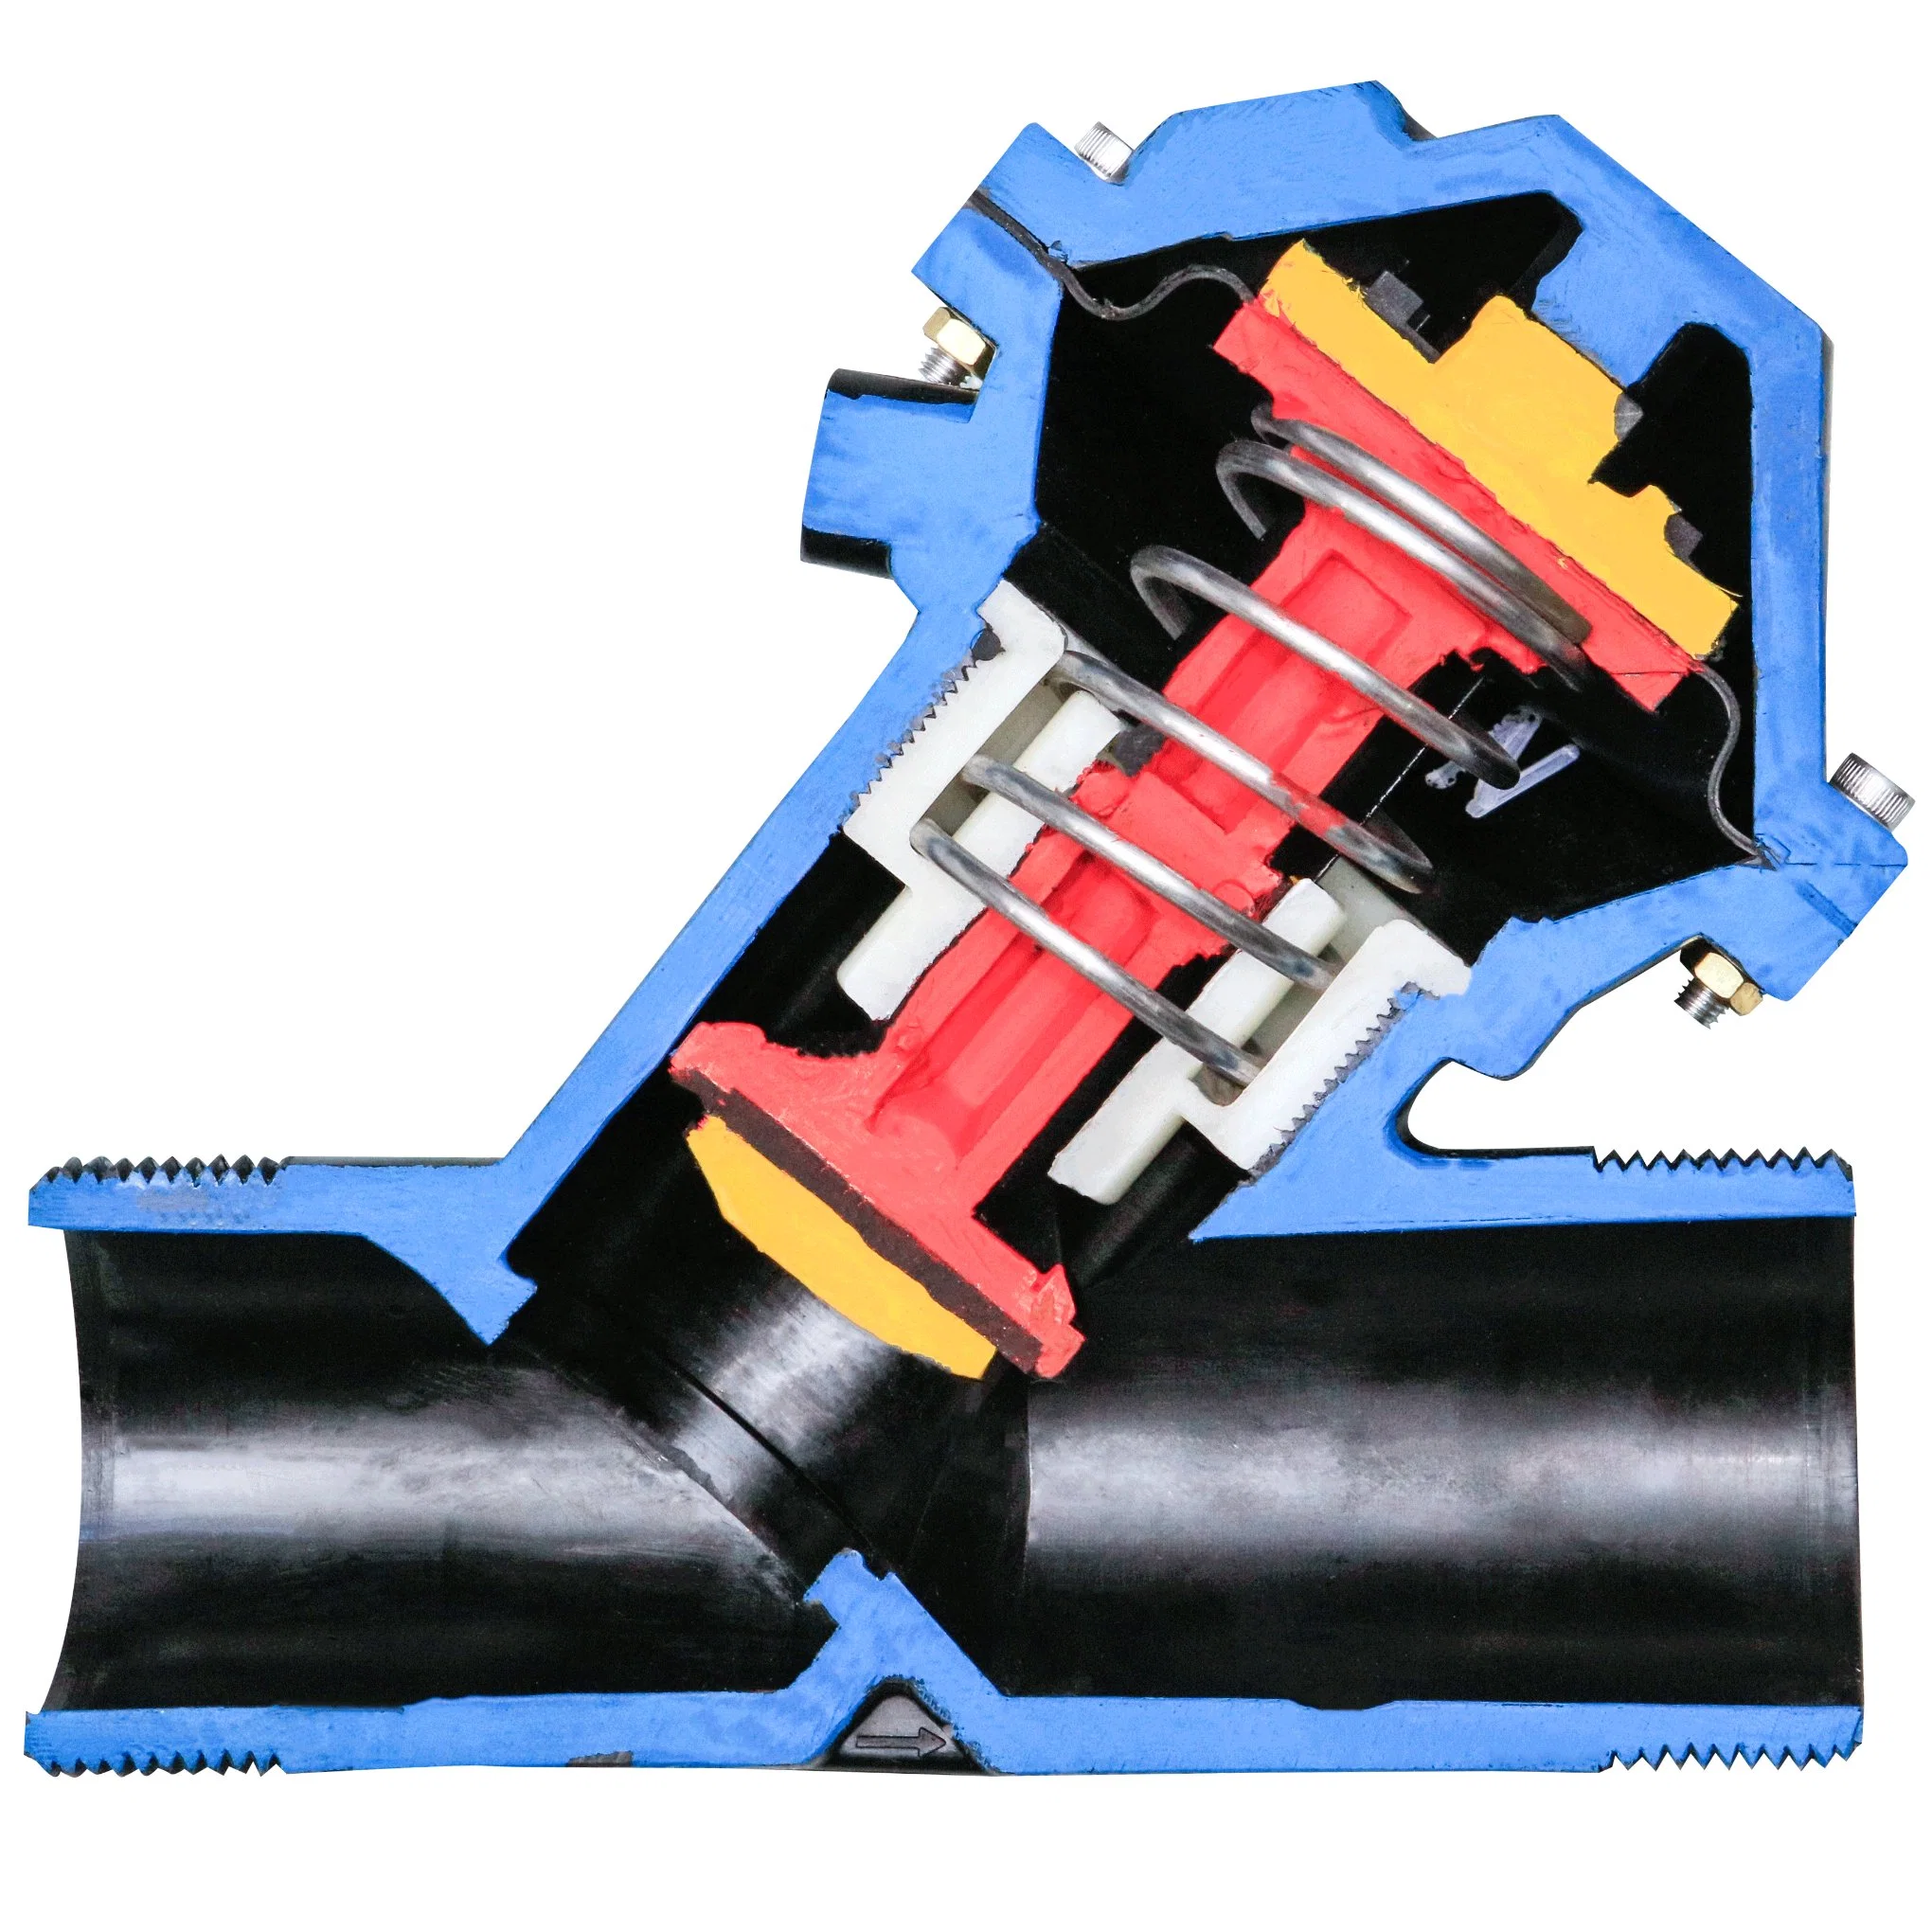 Jkmatic normalmente cerrada la válvula de diafragma de control de aire para el filtrado